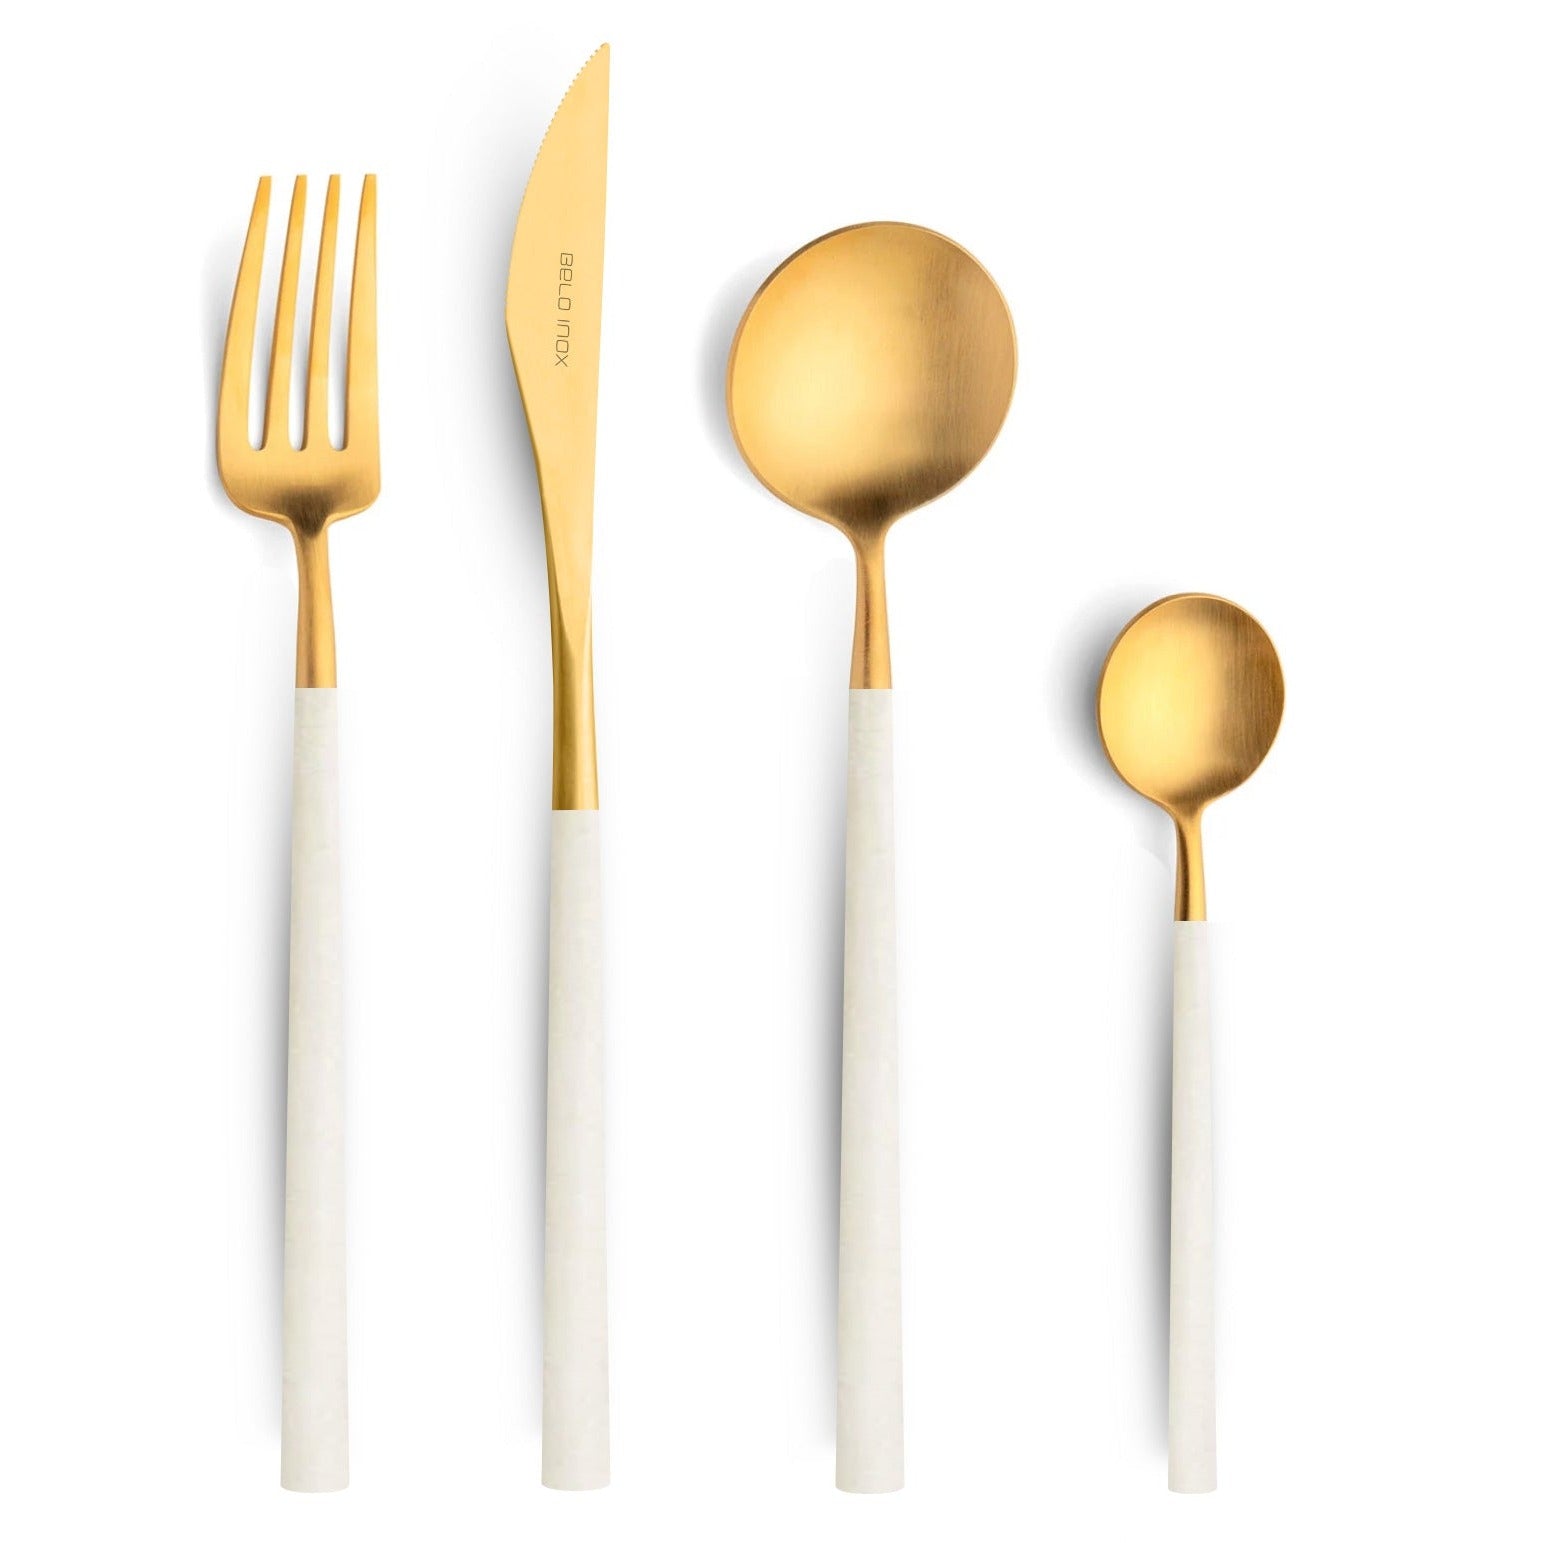 Afgekeurd Haas grillen Belo Inox Neo White Gold bestek set – Bright Kitchen